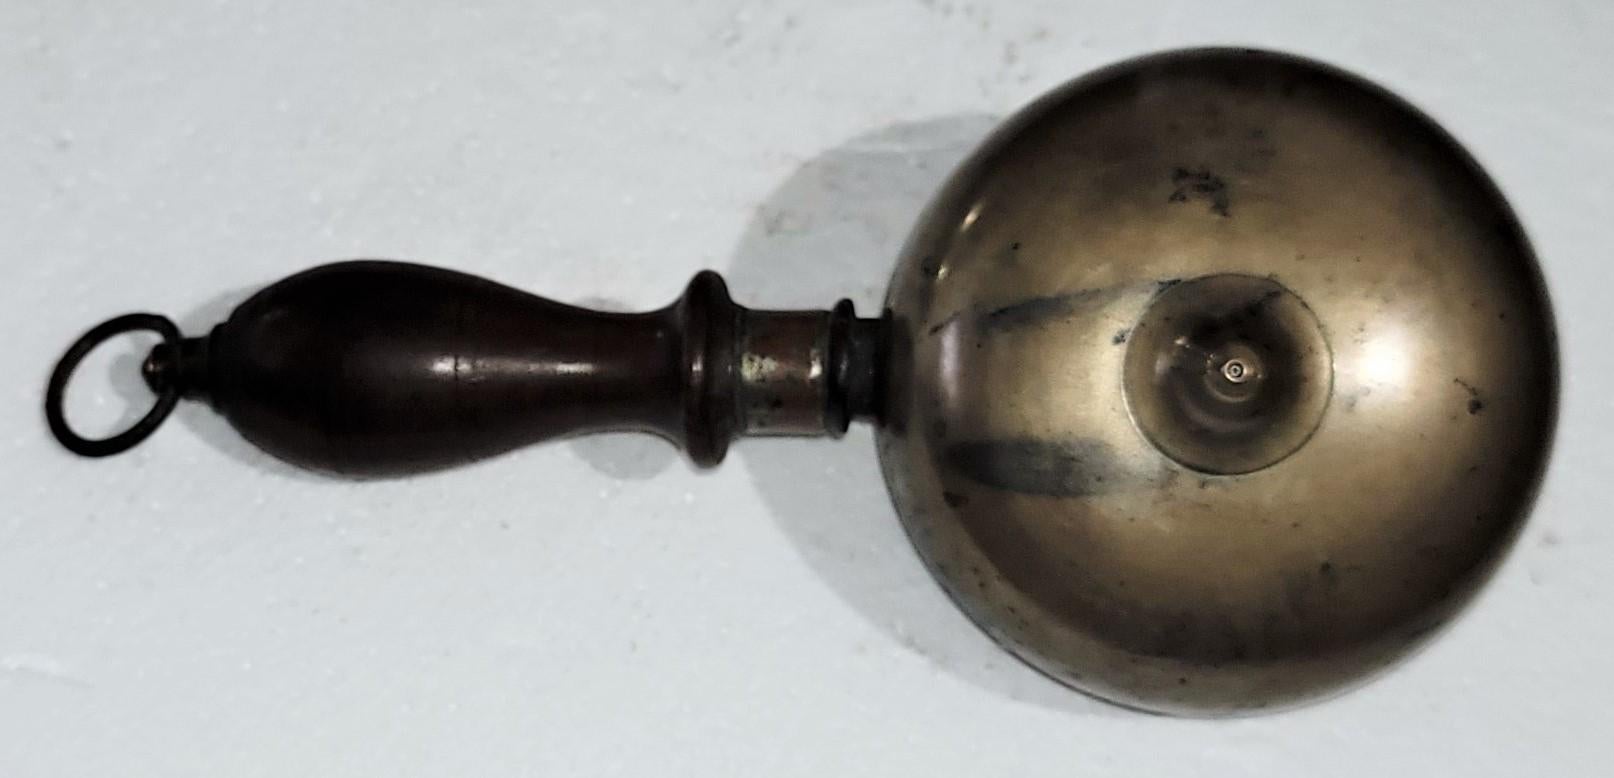 Rare cloche à muffin à main du 19ème siècle. Cloche d'alarme incendie pour crieur public. La cloche comporte deux dômes en laiton montés dos à dos avec du fer, une poignée en bois tourné et un anneau en laiton. La cloche était couramment utilisée